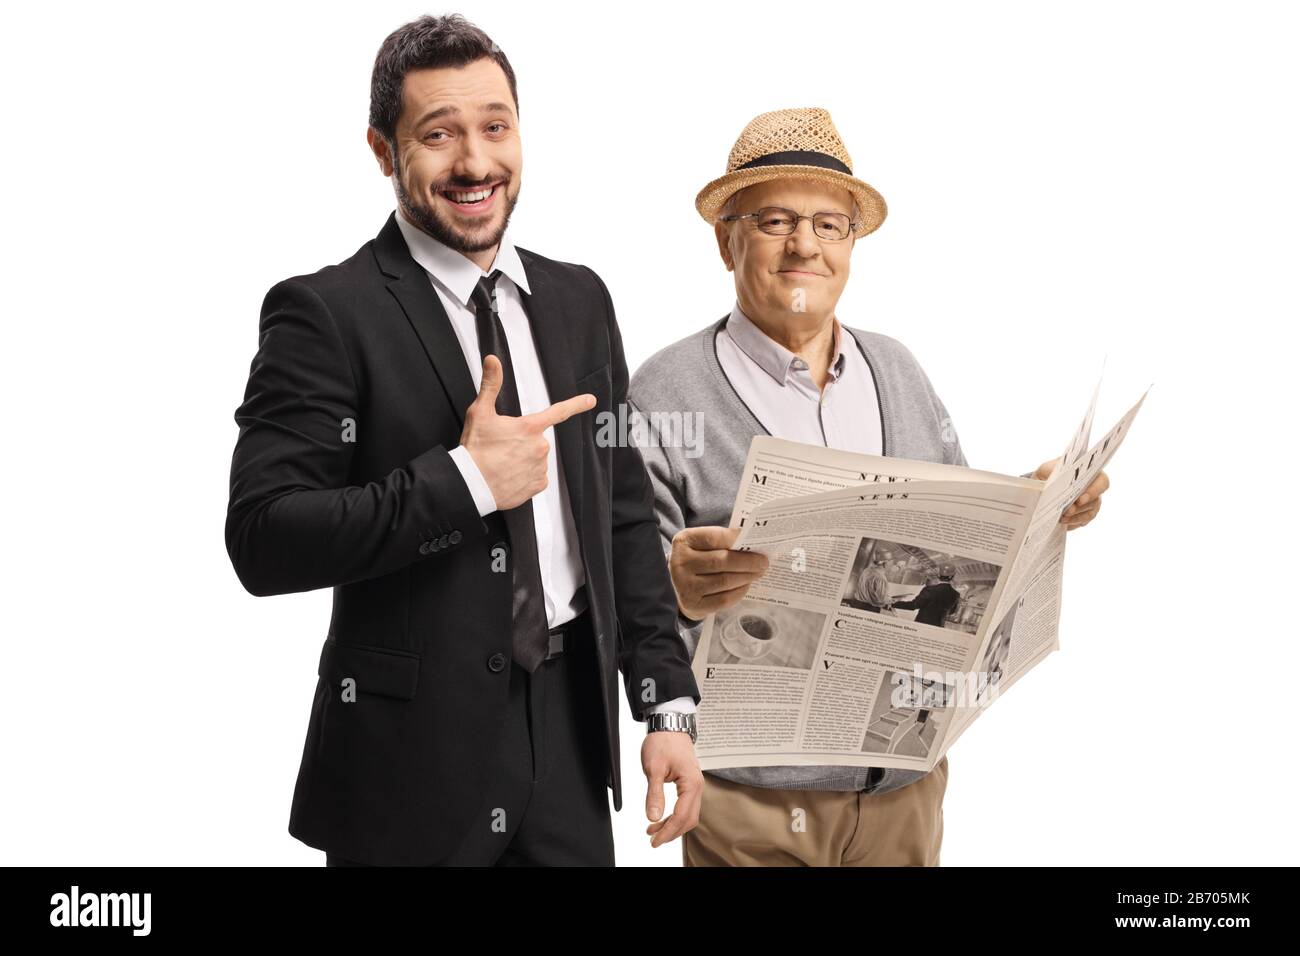 Jeune homme en costume riant et pointant vers un homme plus âgé avec un journal isolé sur fond blanc Banque D'Images